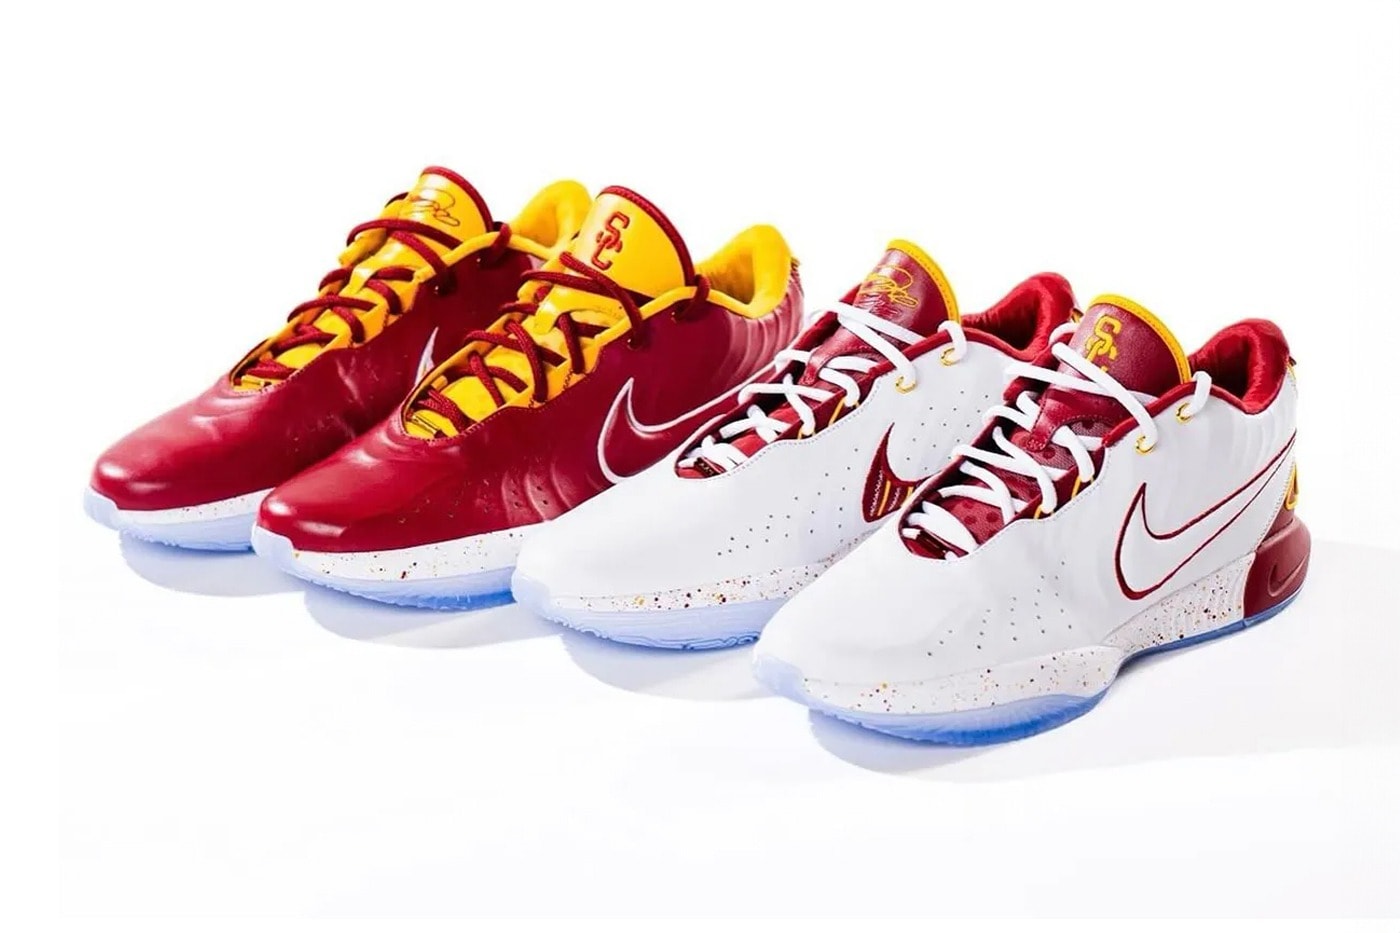 南加州大學籃球隊正式公開 2 款 Nike LeBron 21 PE 全新配色